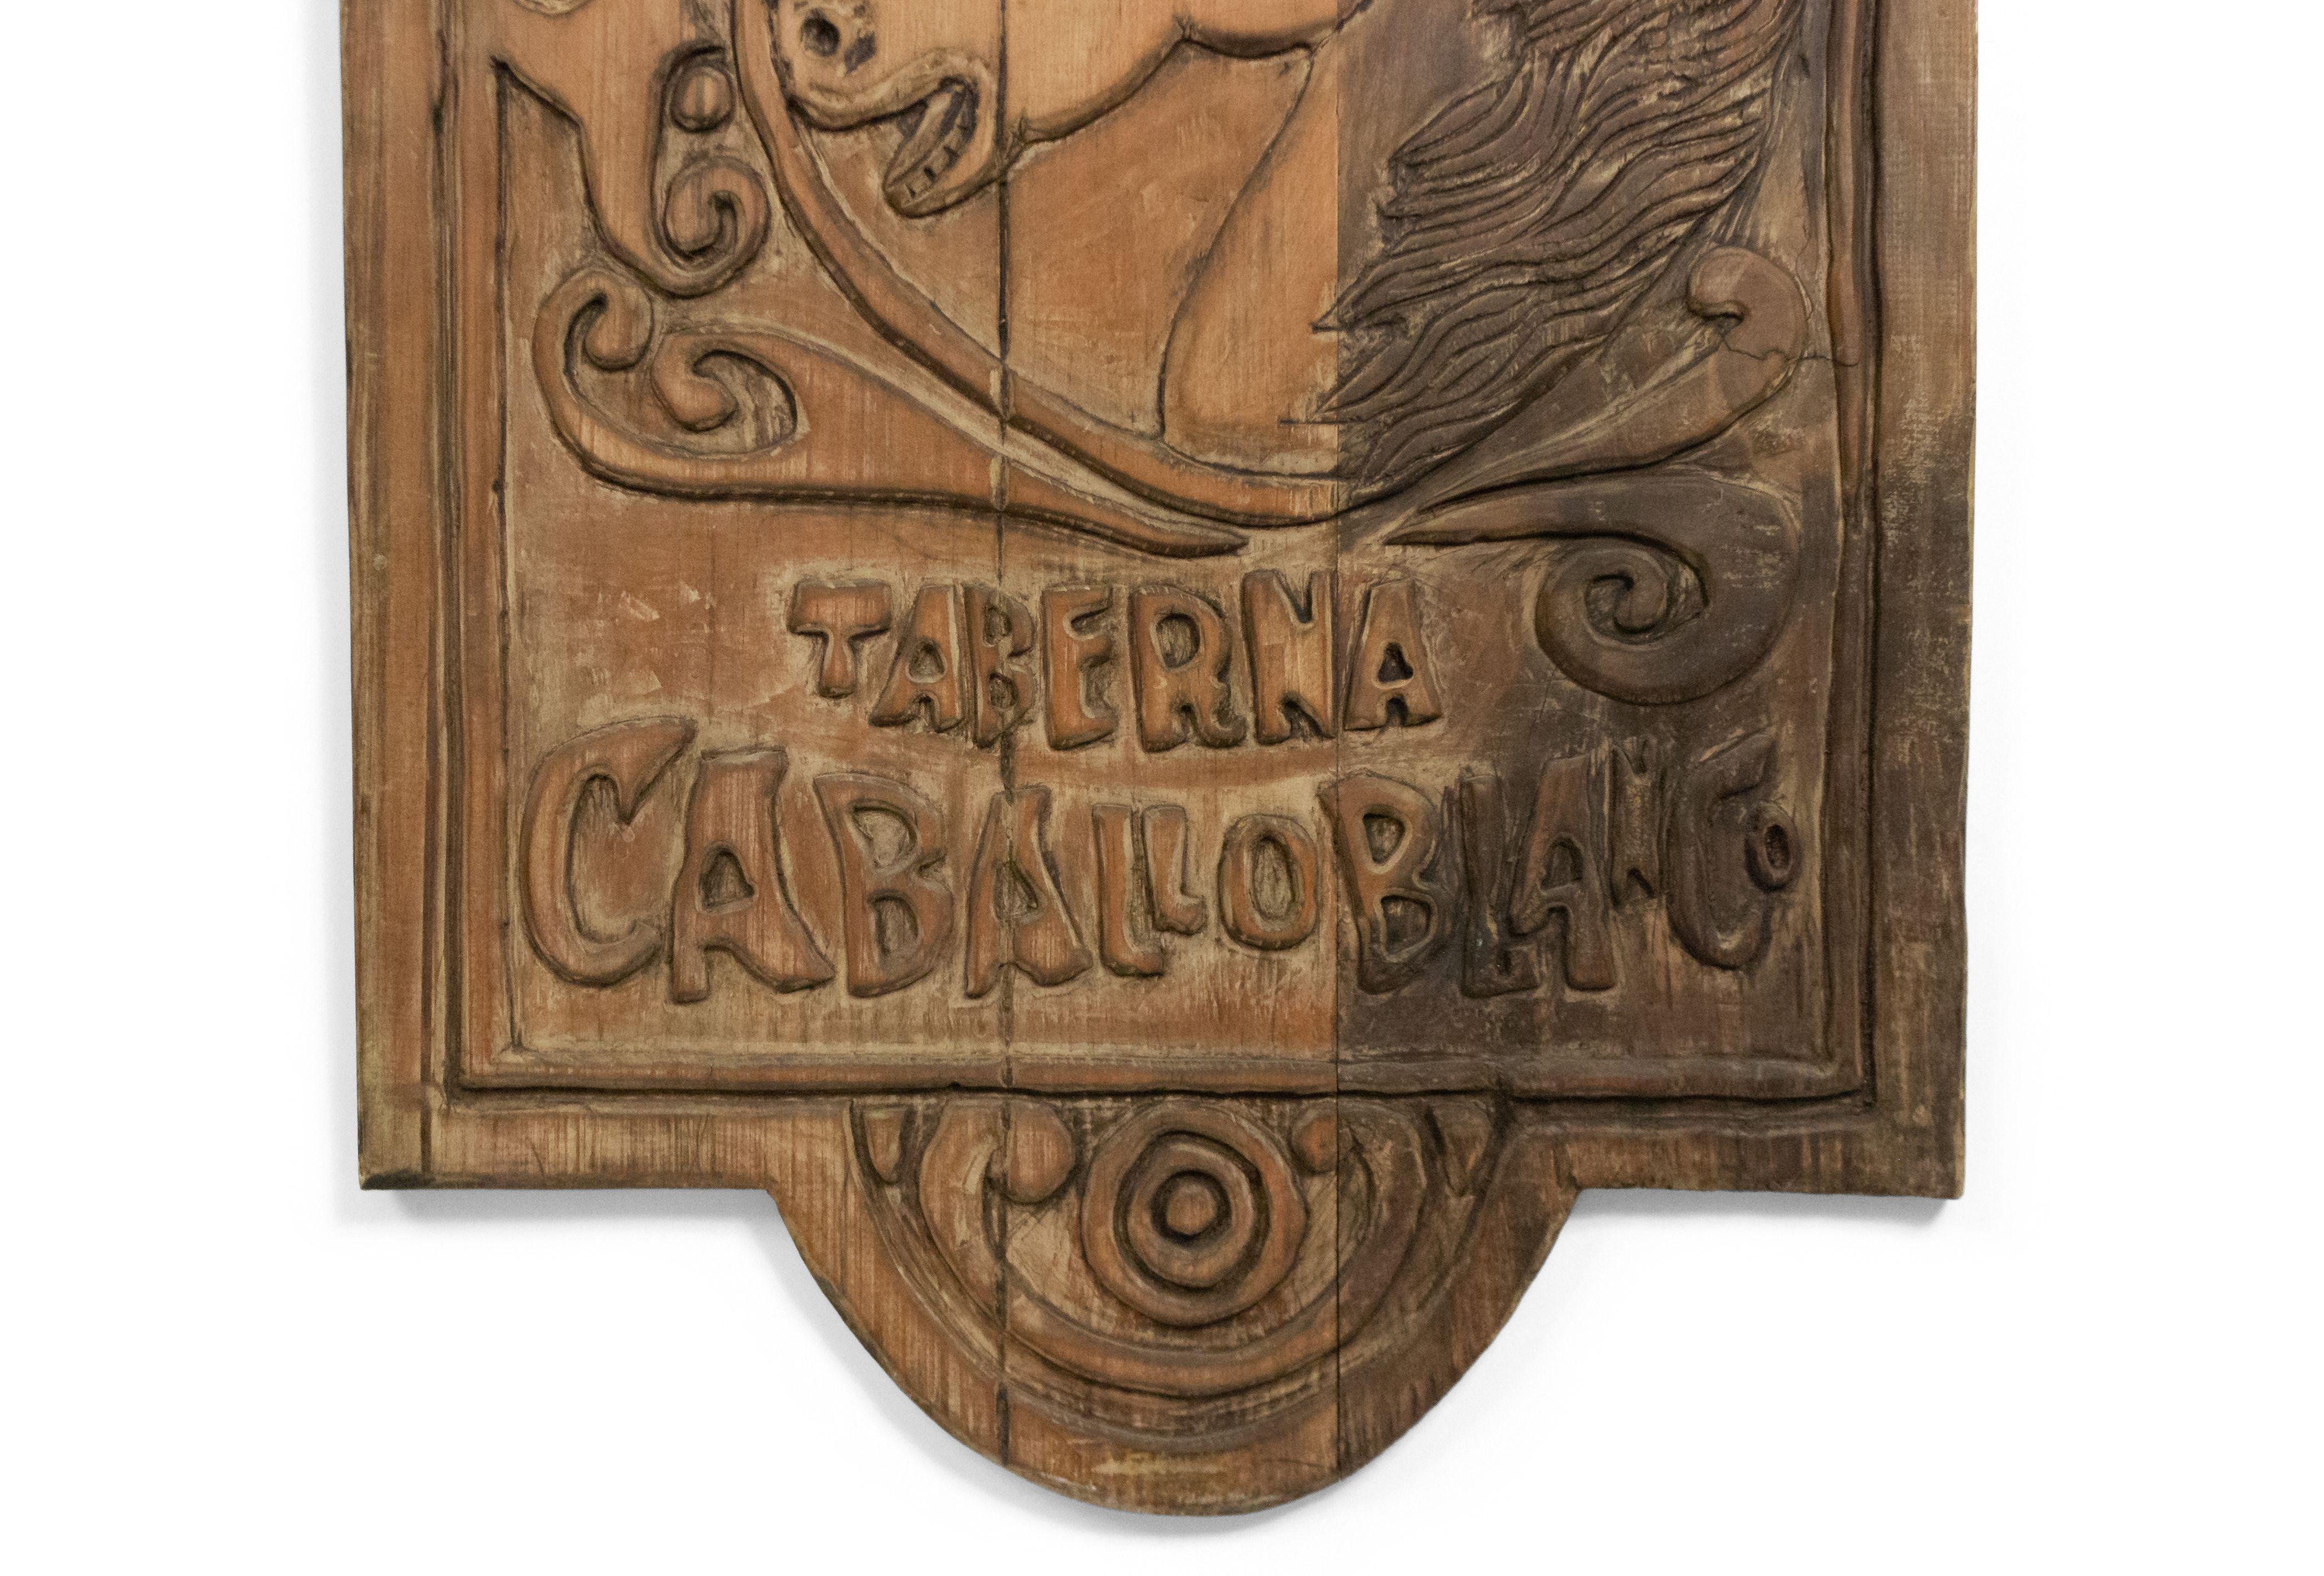 Plaque murale/signe de style provincial espagnol du 20e siècle peinte et sculptée en forme de tête de cheval (La Taberna Caballoblanco) (article référencé : 049724D).
